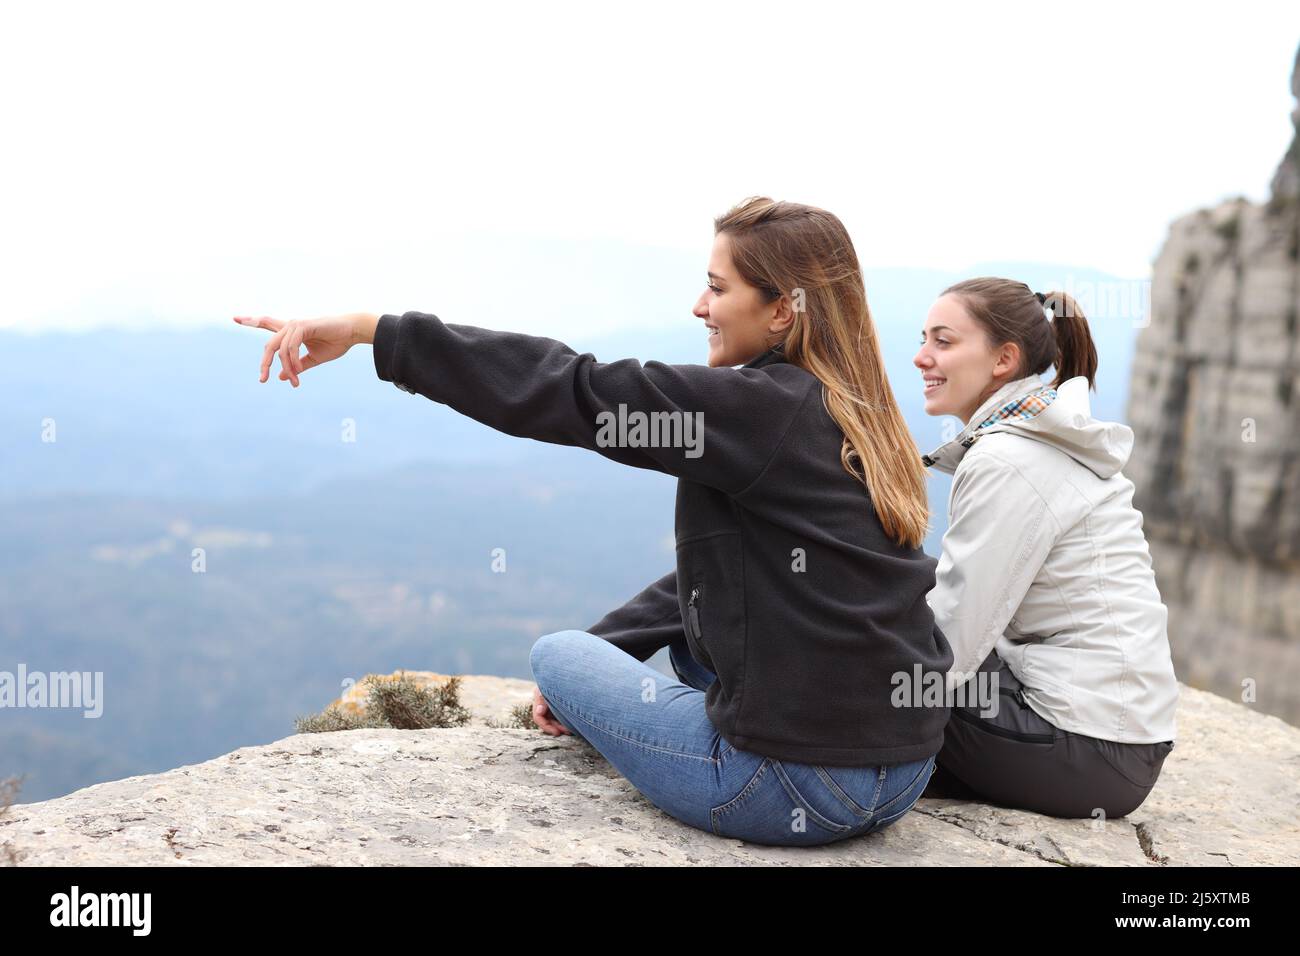 Zwei glückliche Wanderer, die auf einer Klippe sitzen und die Aussicht auf den Berg im Freien genießen und wegzeigen Stockfoto